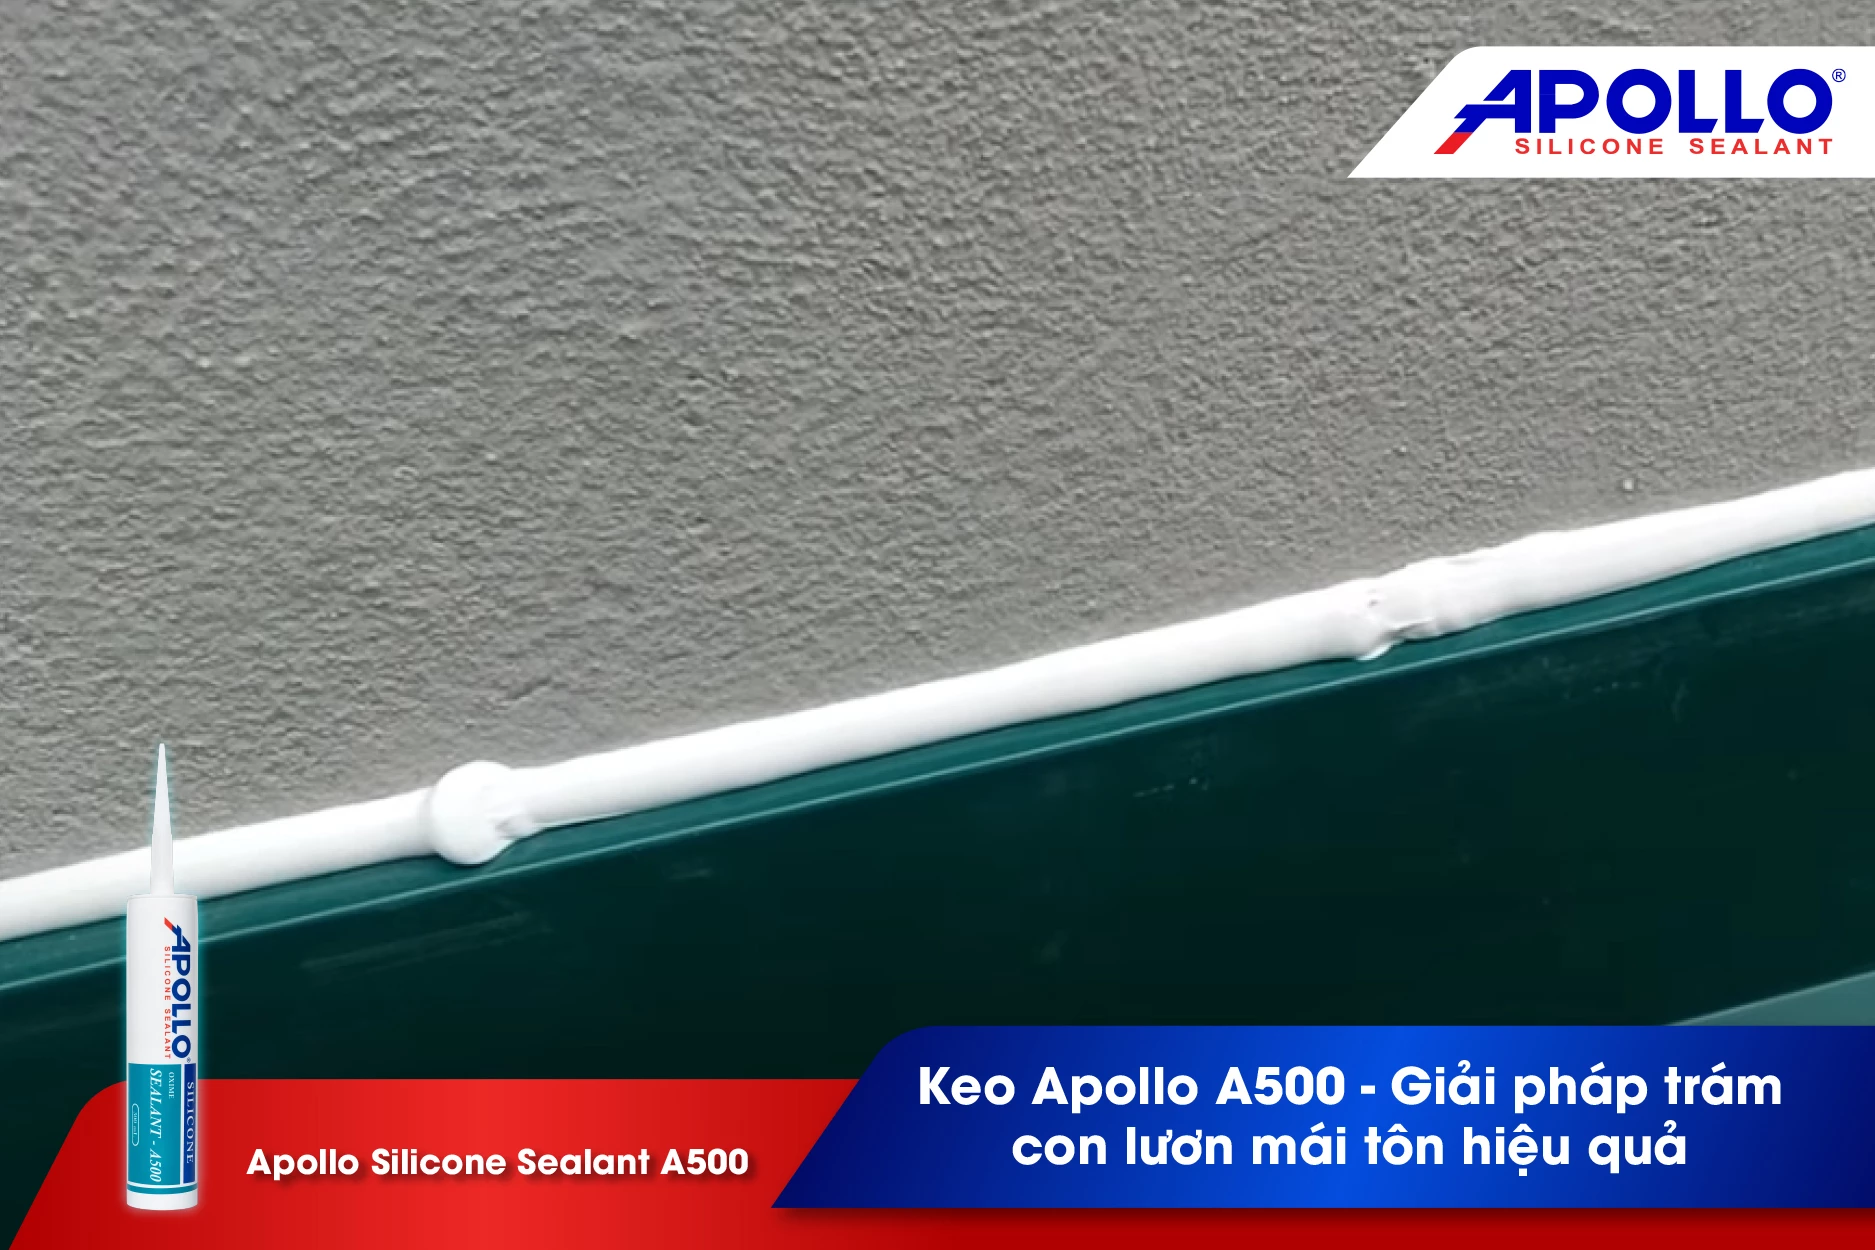 Keo Apollo A500 - Giải pháp trám con lươn mái tôn hiệu quả